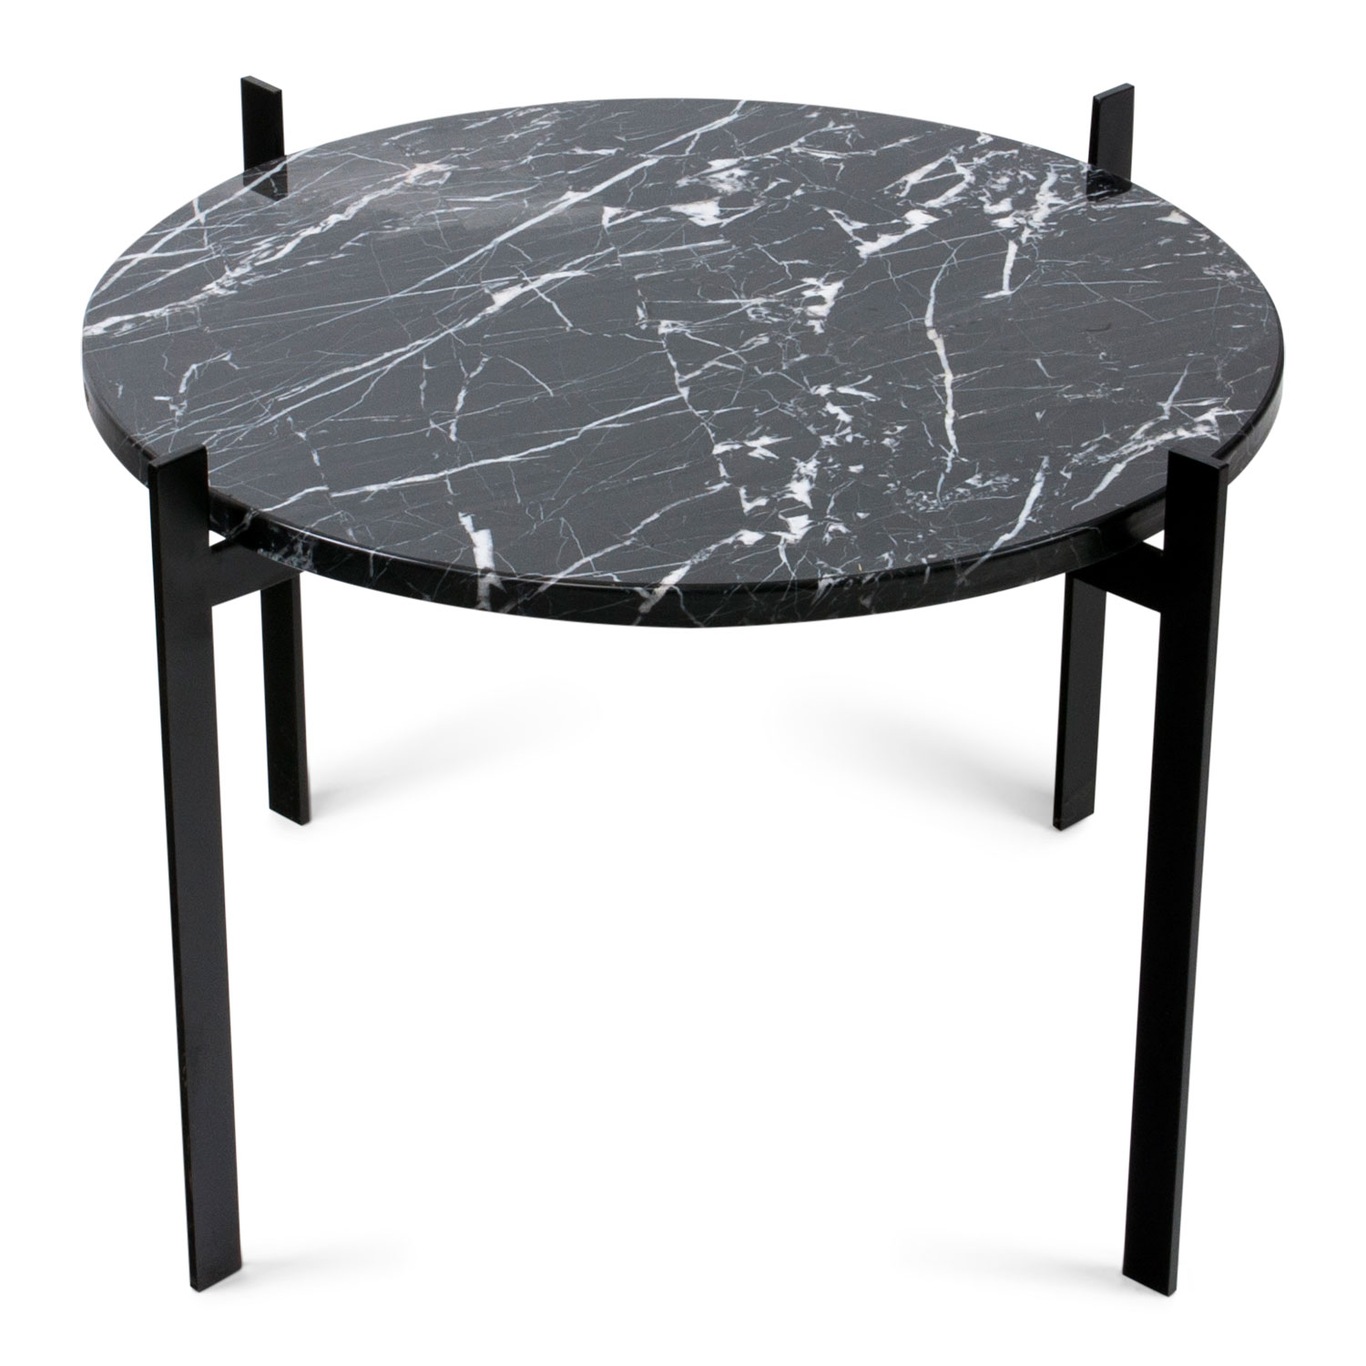 Single Deck Pöytä, Musta Marmori/Musta